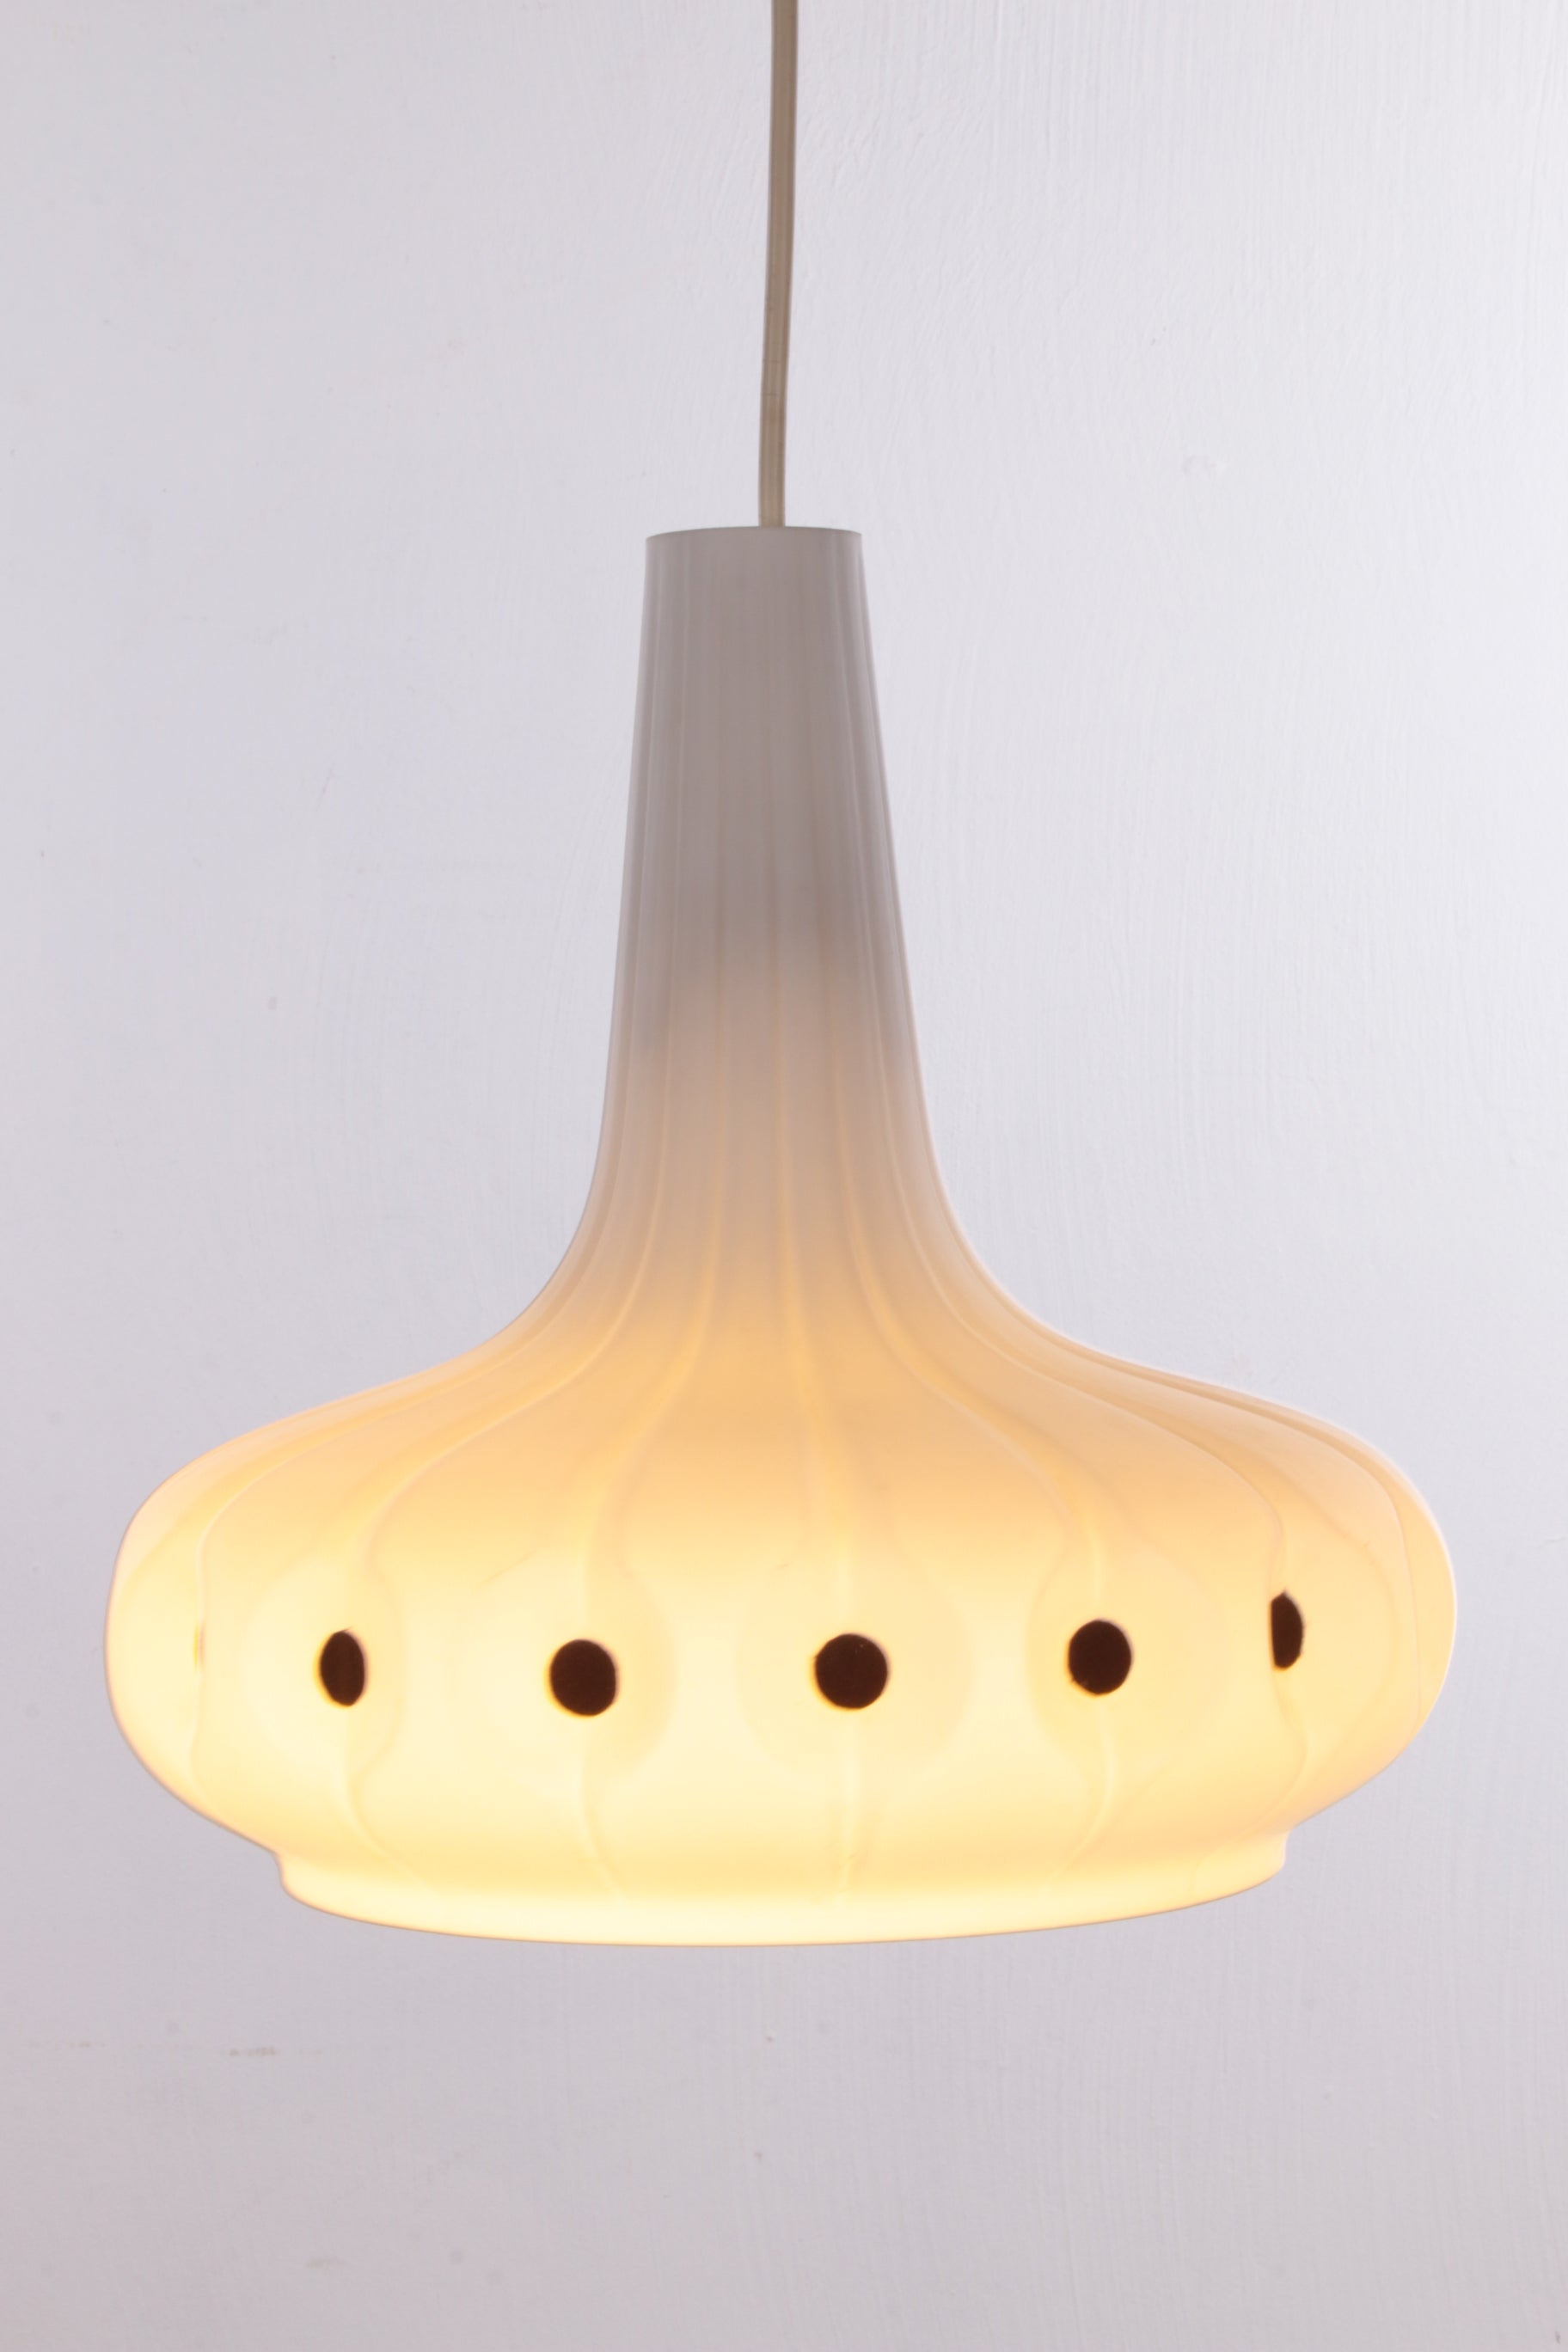 Design Peill & Putzler hanglamp, 1960 licht aan